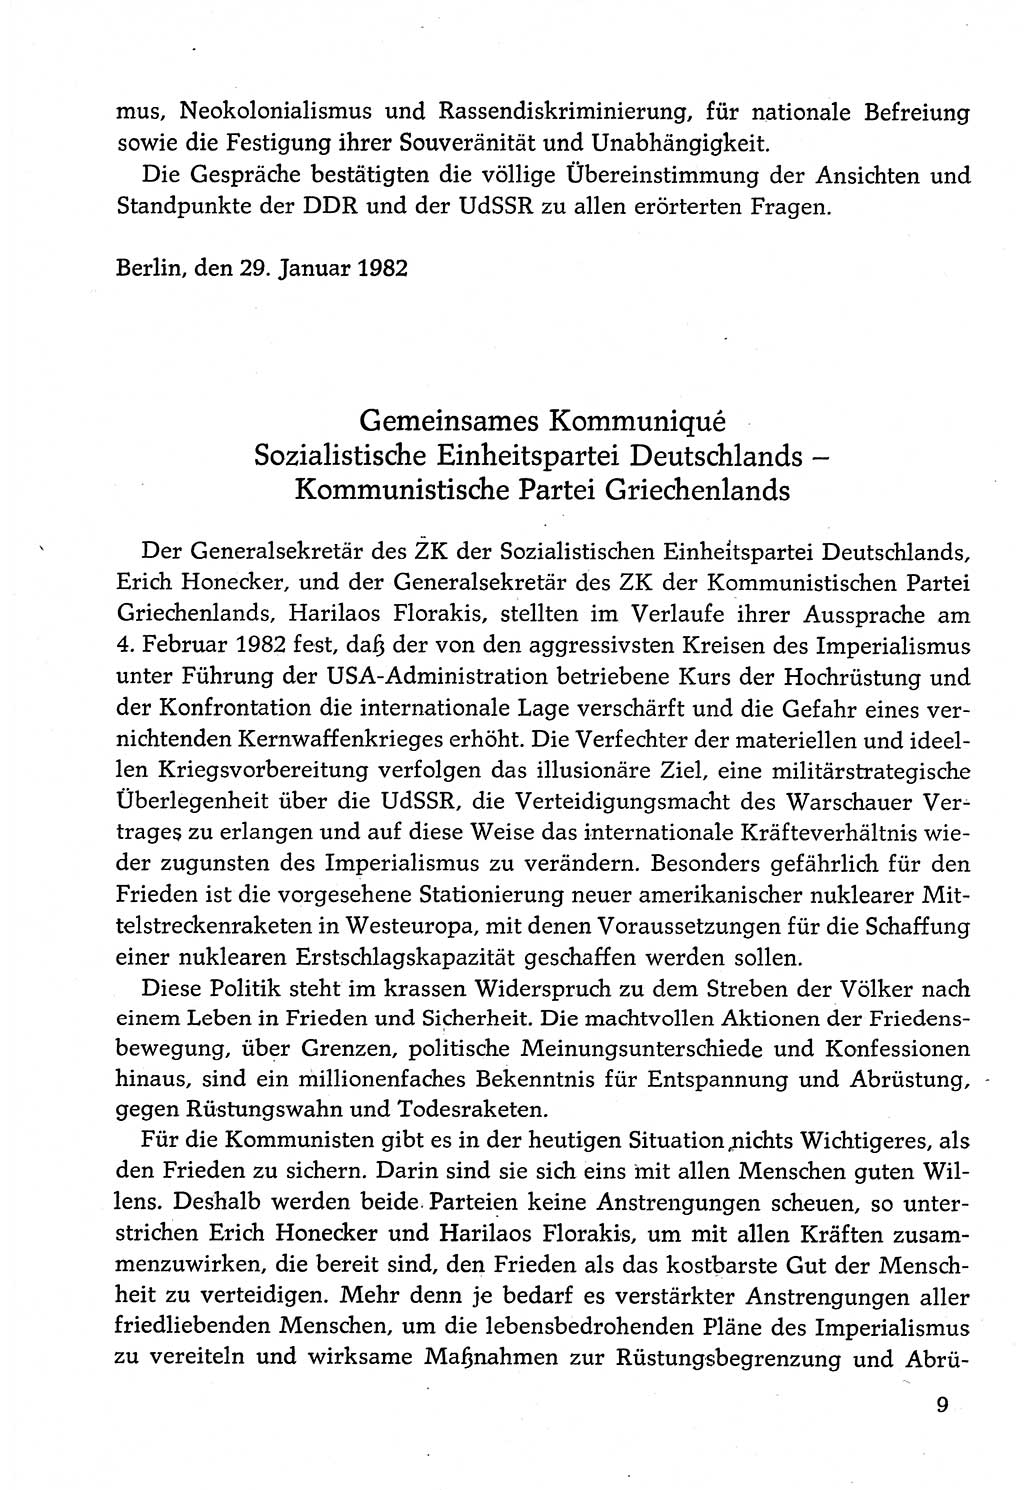 Dokumente der Sozialistischen Einheitspartei Deutschlands (SED) [Deutsche Demokratische Republik (DDR)] 1982-1983, Seite 9 (Dok. SED DDR 1982-1983, S. 9)